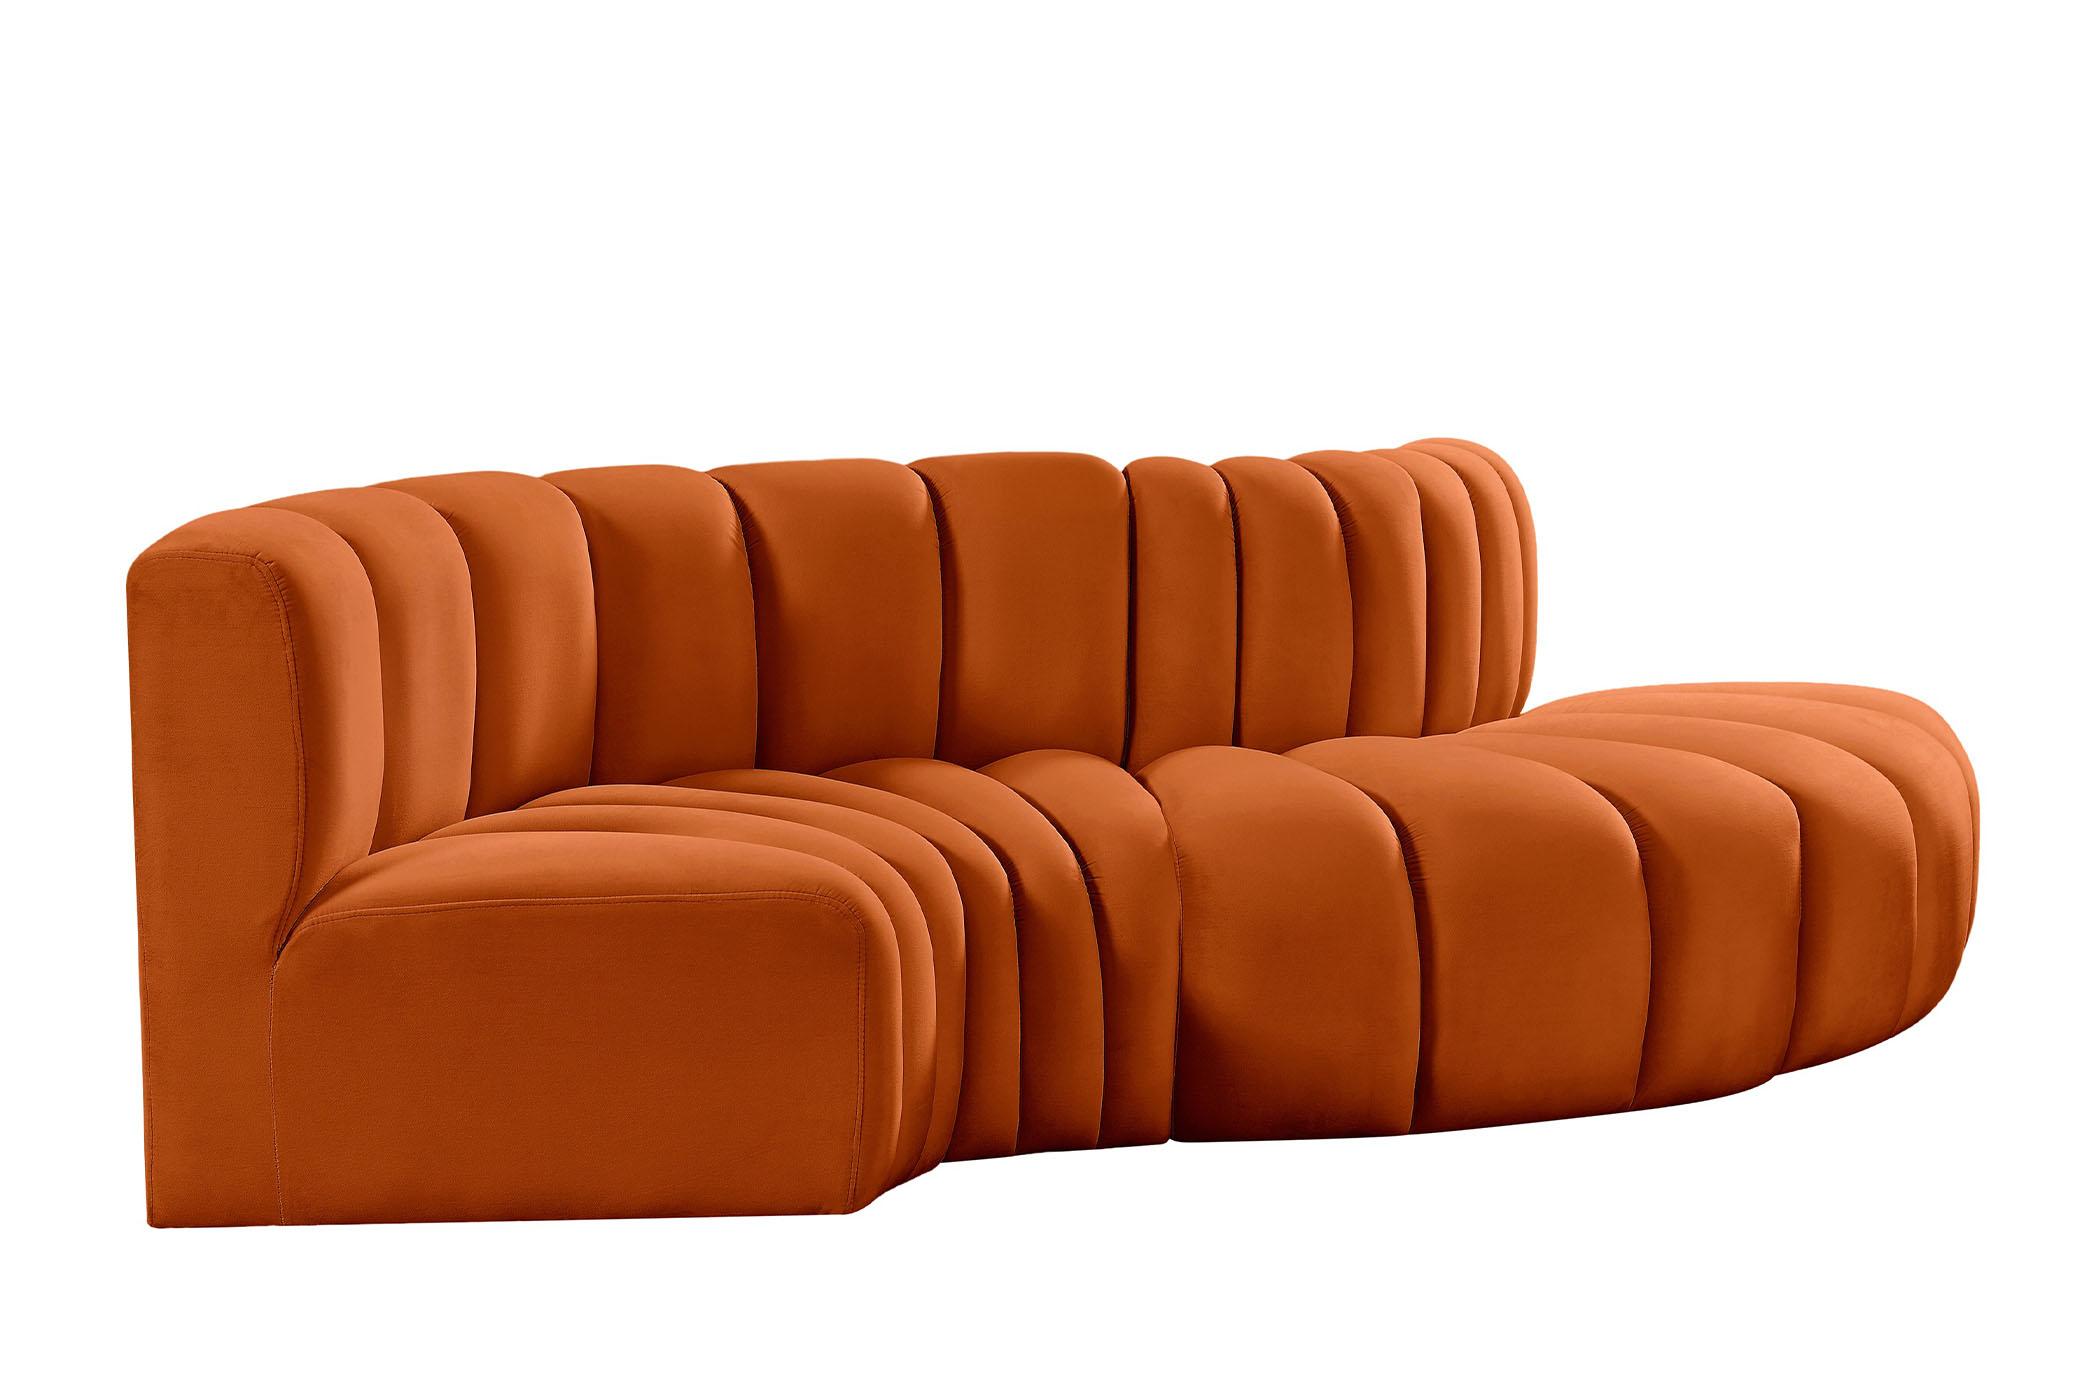 Contemporary, Modern Modular Sectional Sofa ARC 103Cognac-S4D 103Cognac-S4D in Cognac Velvet